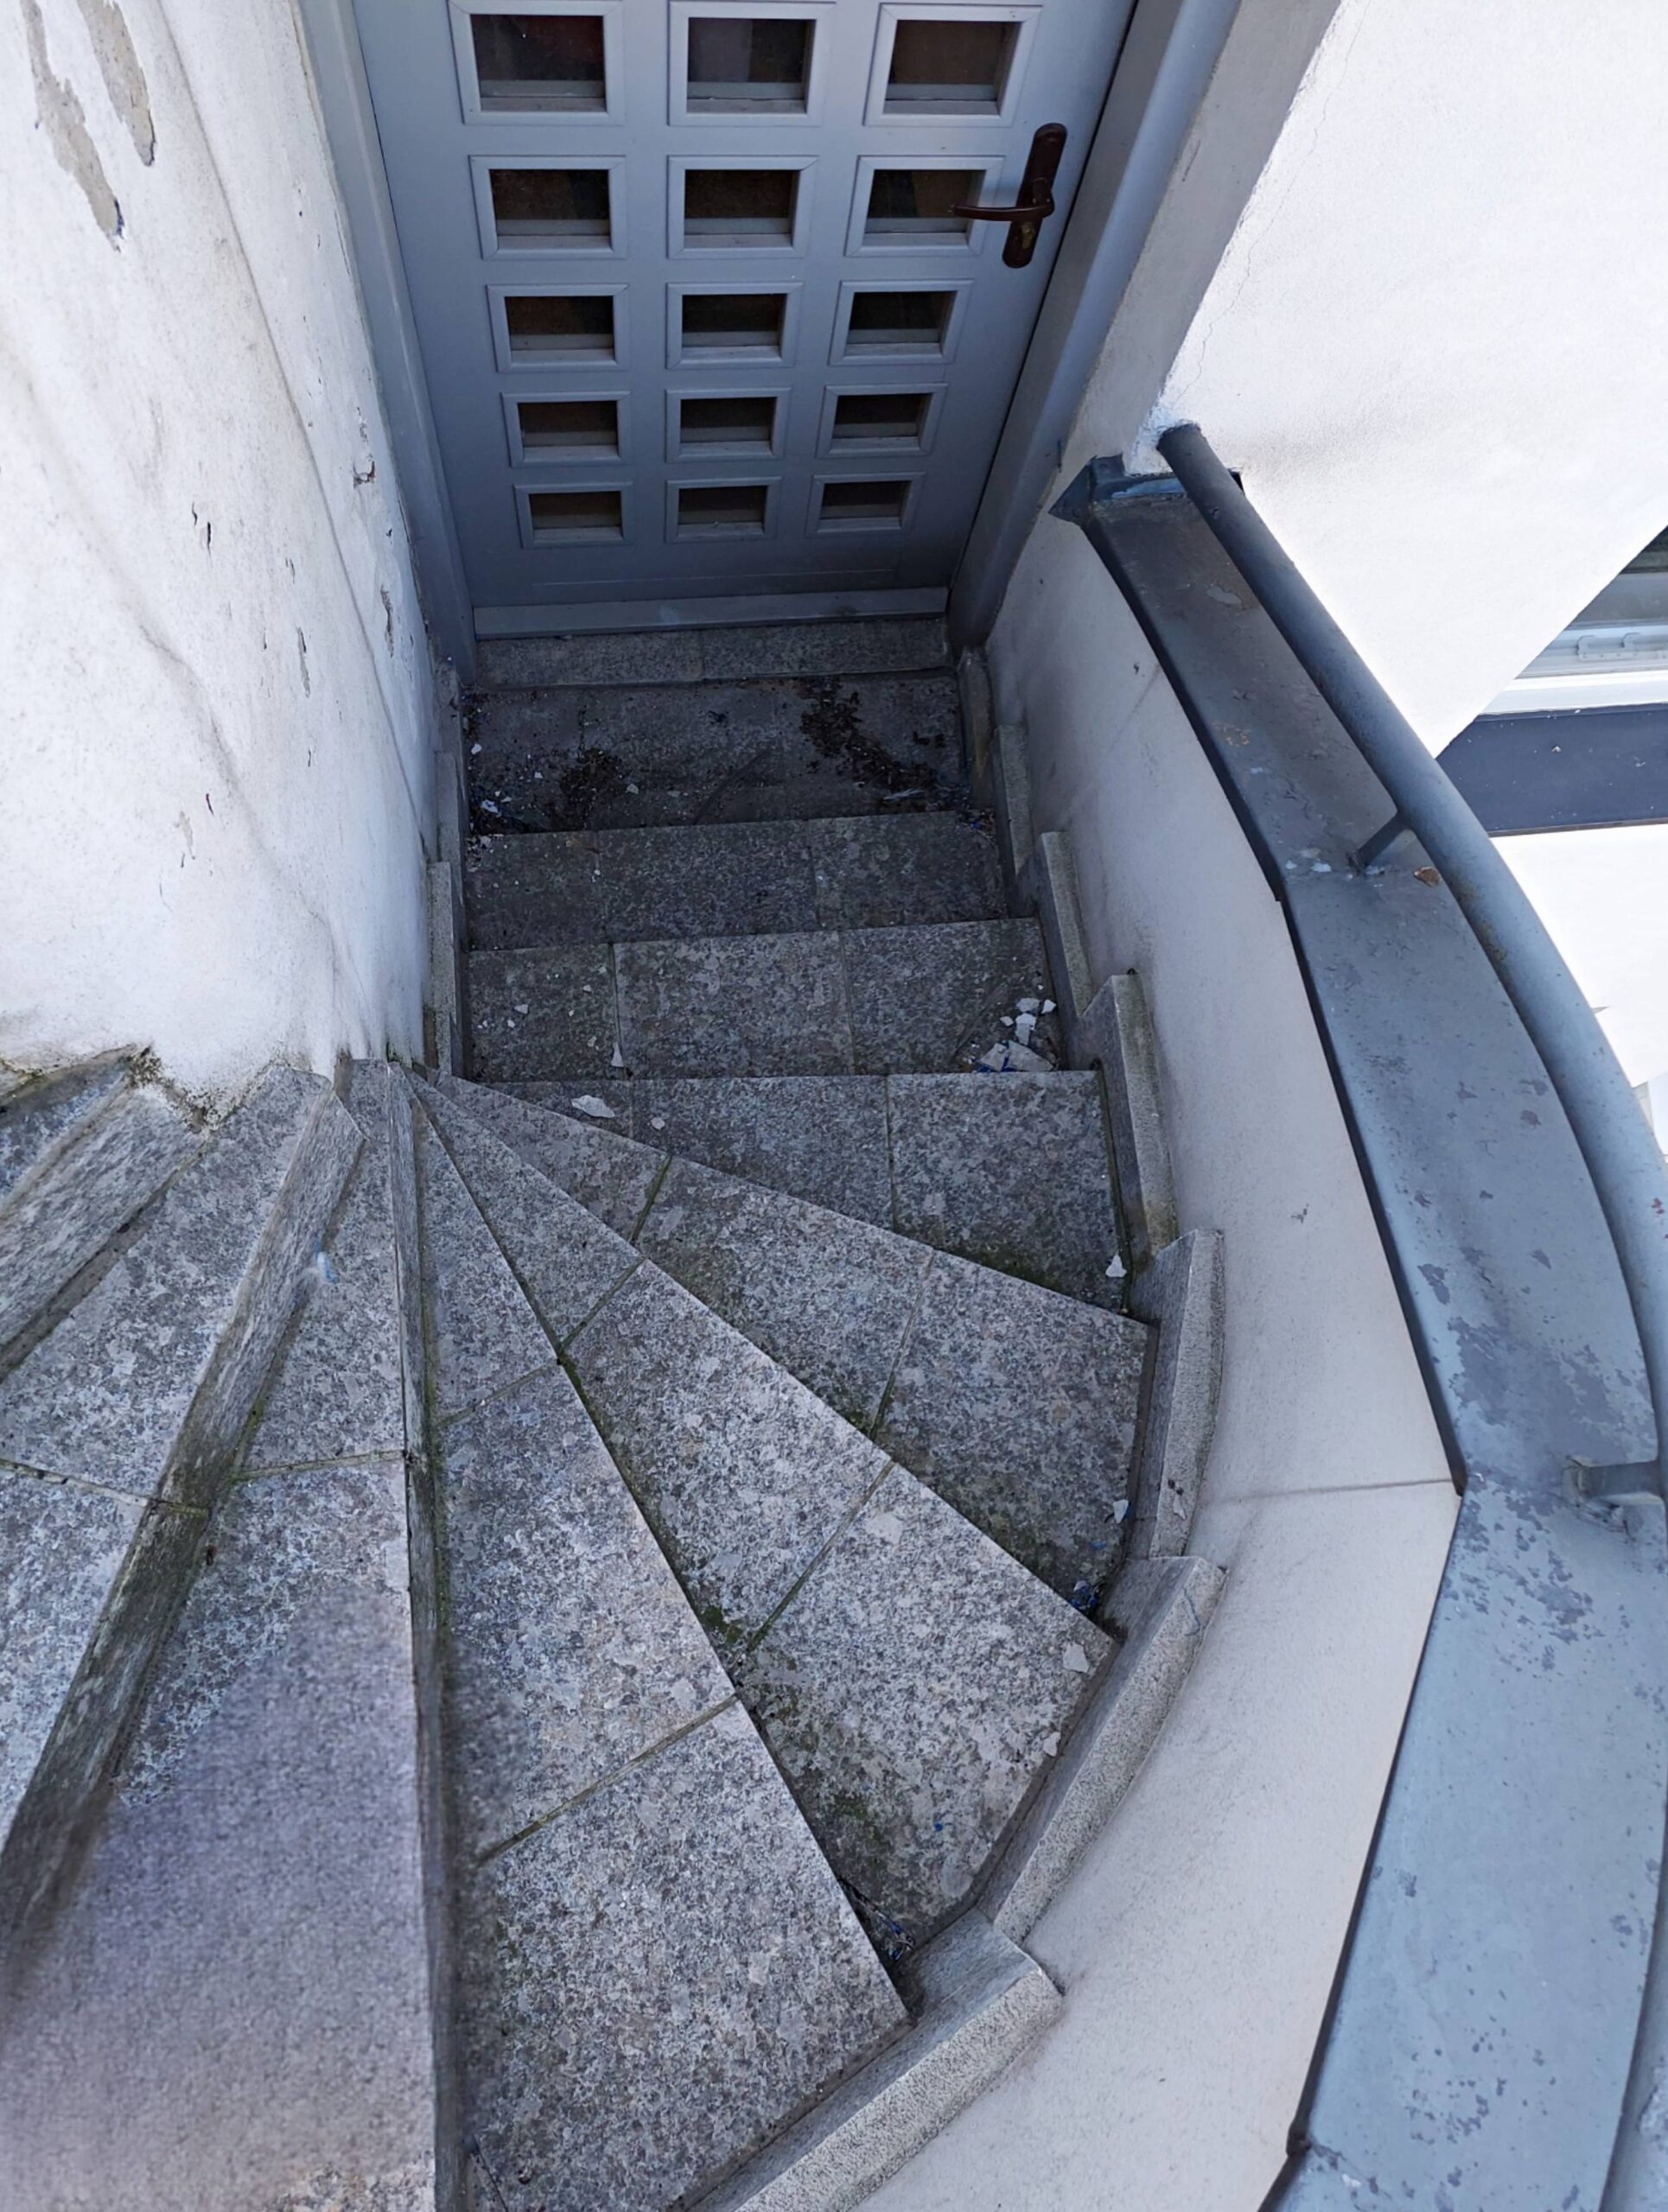 Elewacja tylna, Spiralne schody na taras, na zewnątrz budynku. Fot. Aleksandra Bocianowska 2022 r., źródło: AOD III.